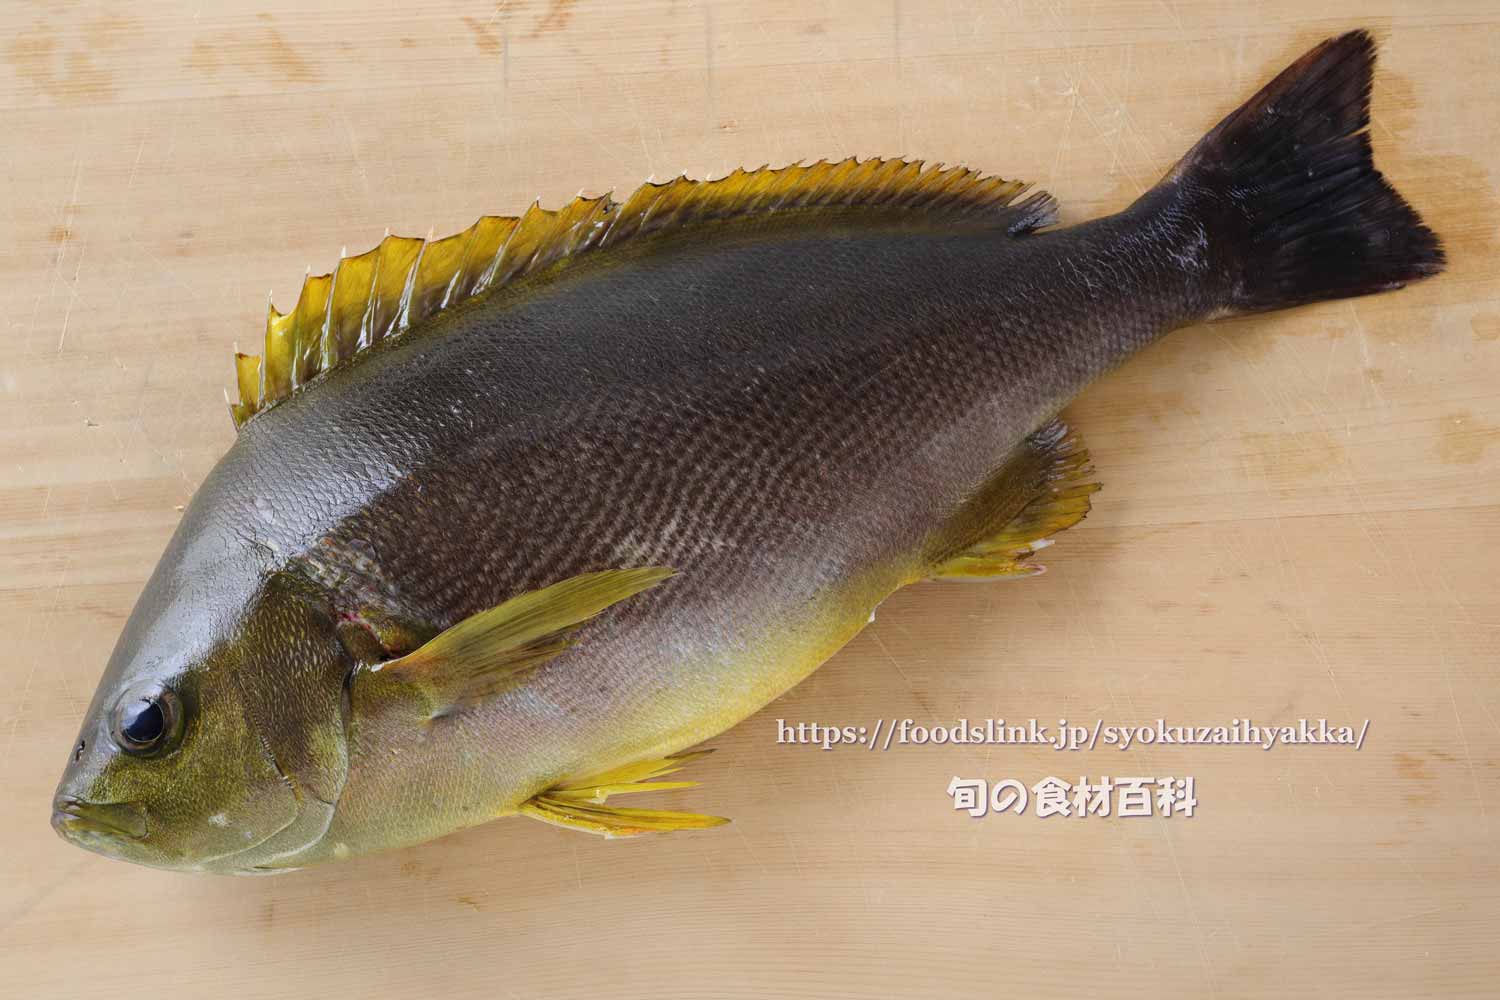 イサキ 鶏魚 伊佐木のさばき方 三枚におろす 旬の魚介百科